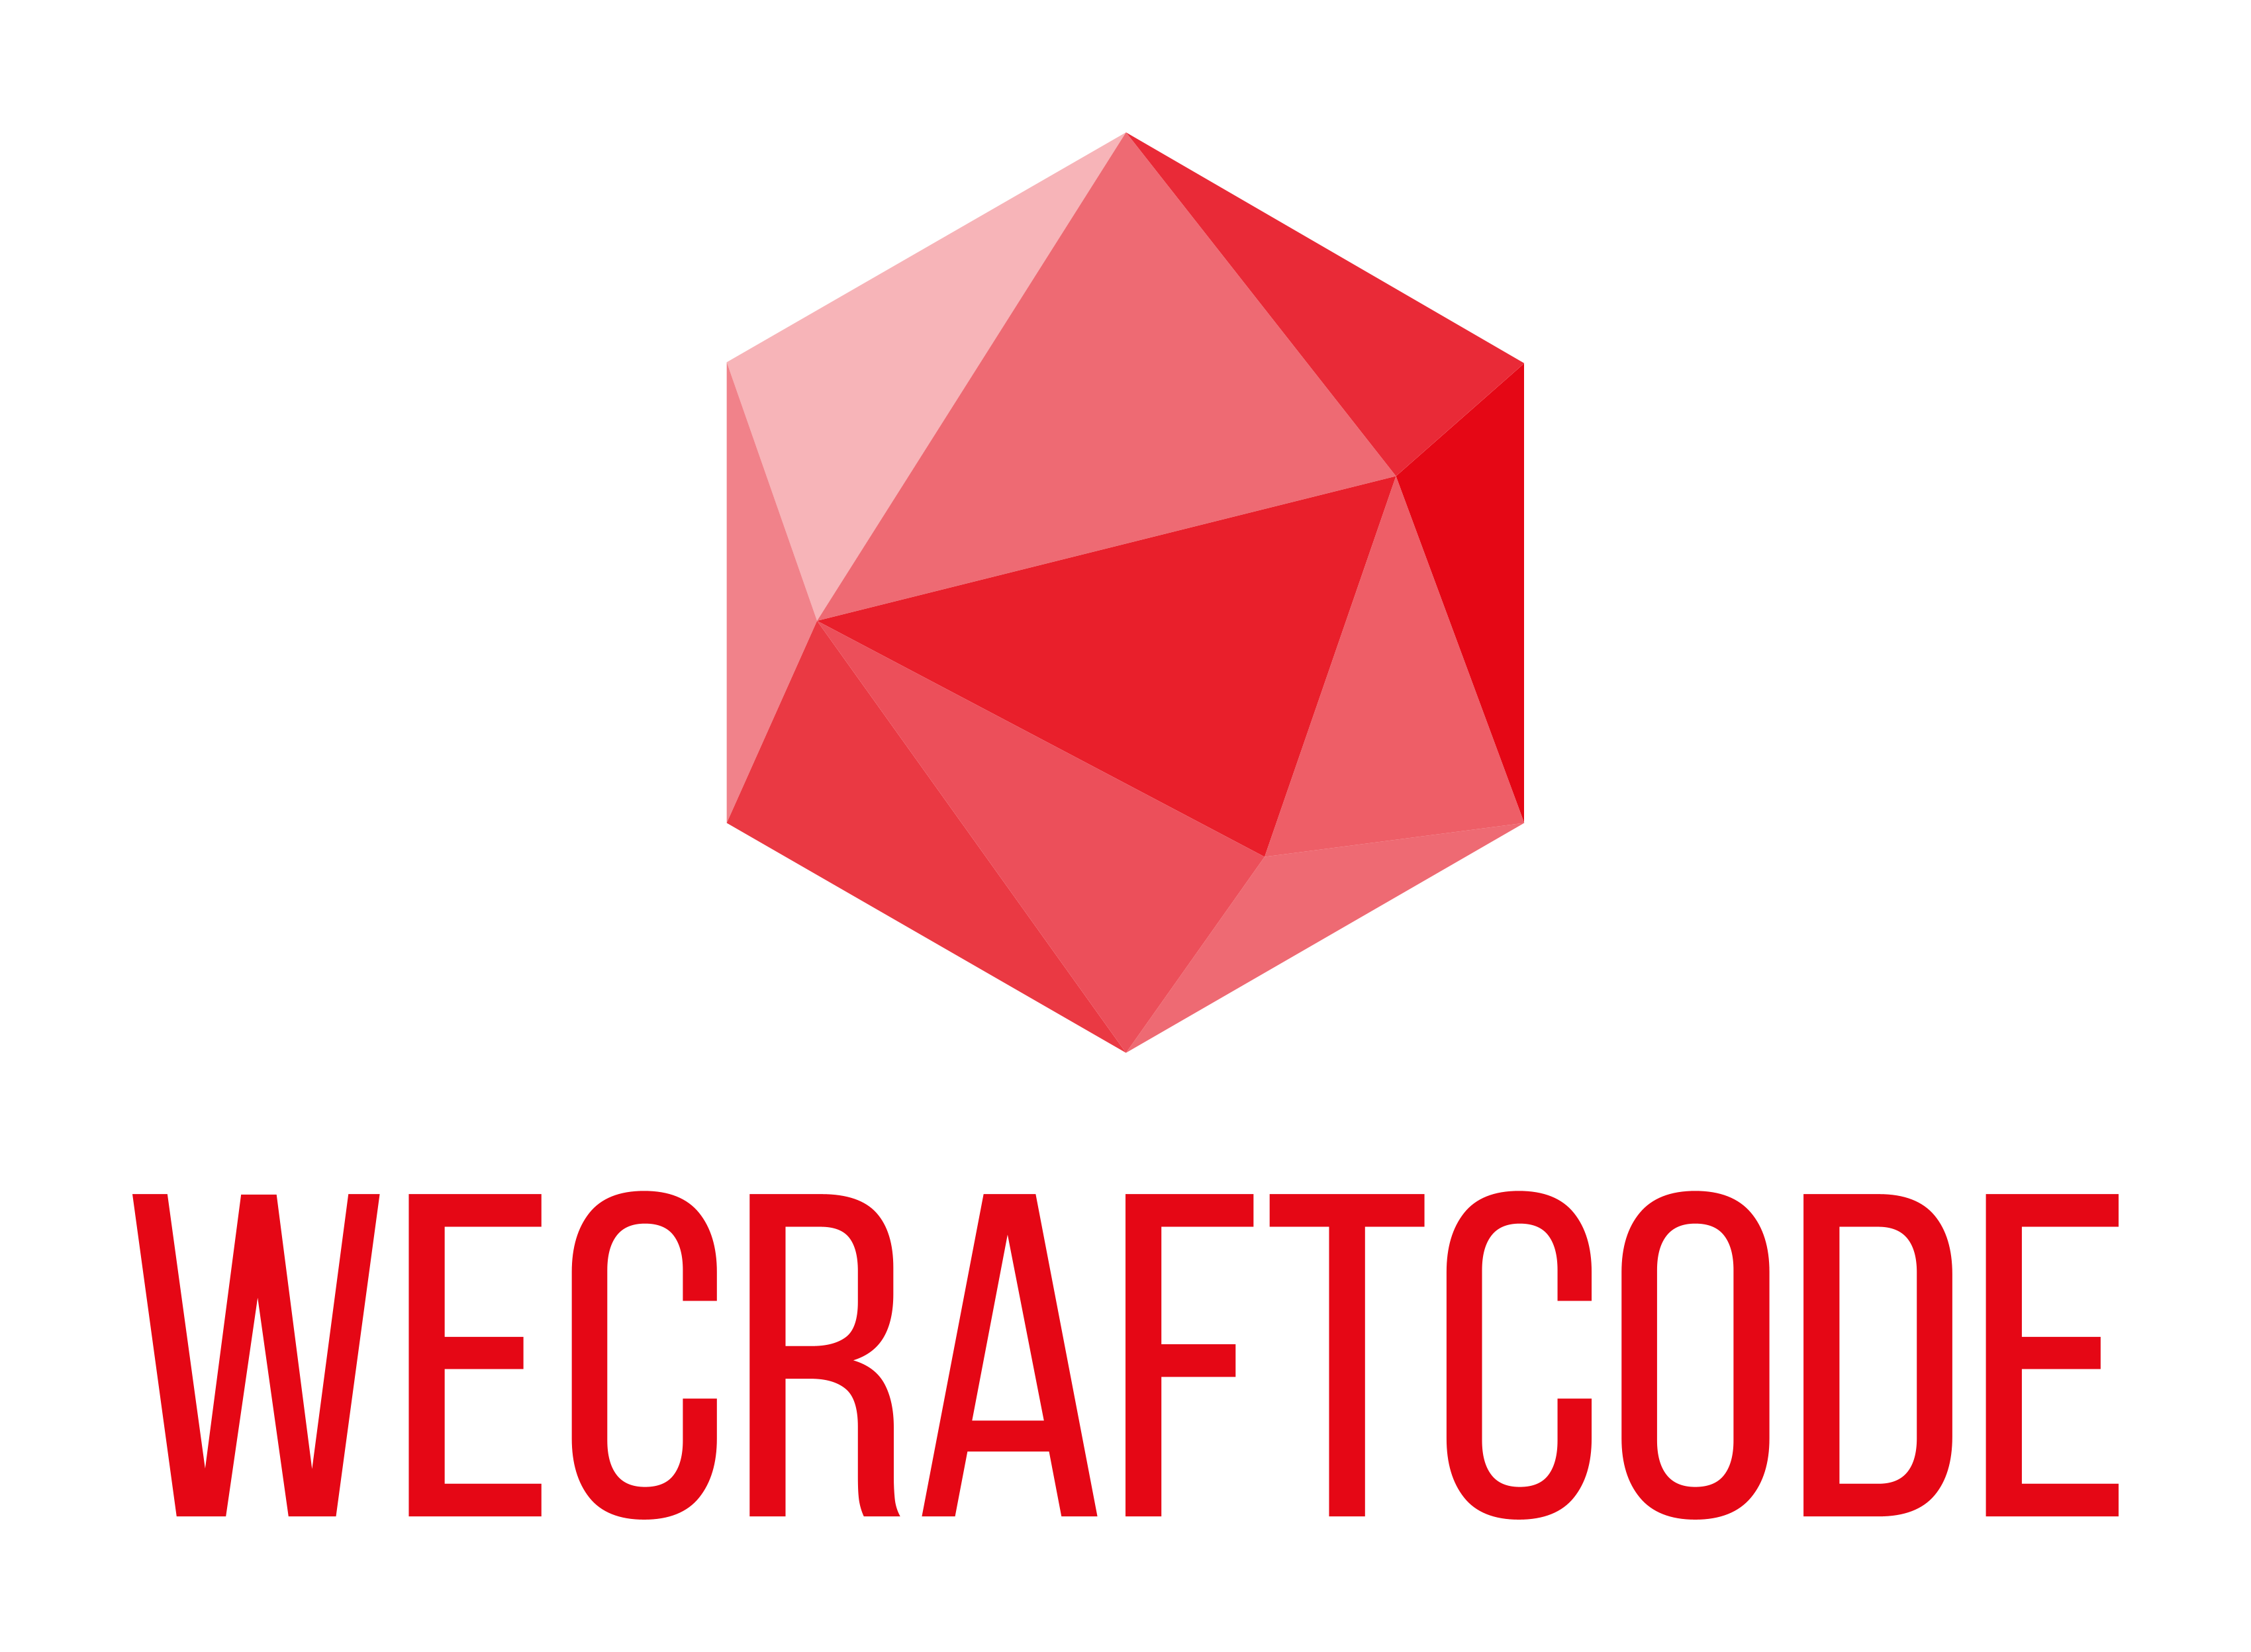 wecraftcode